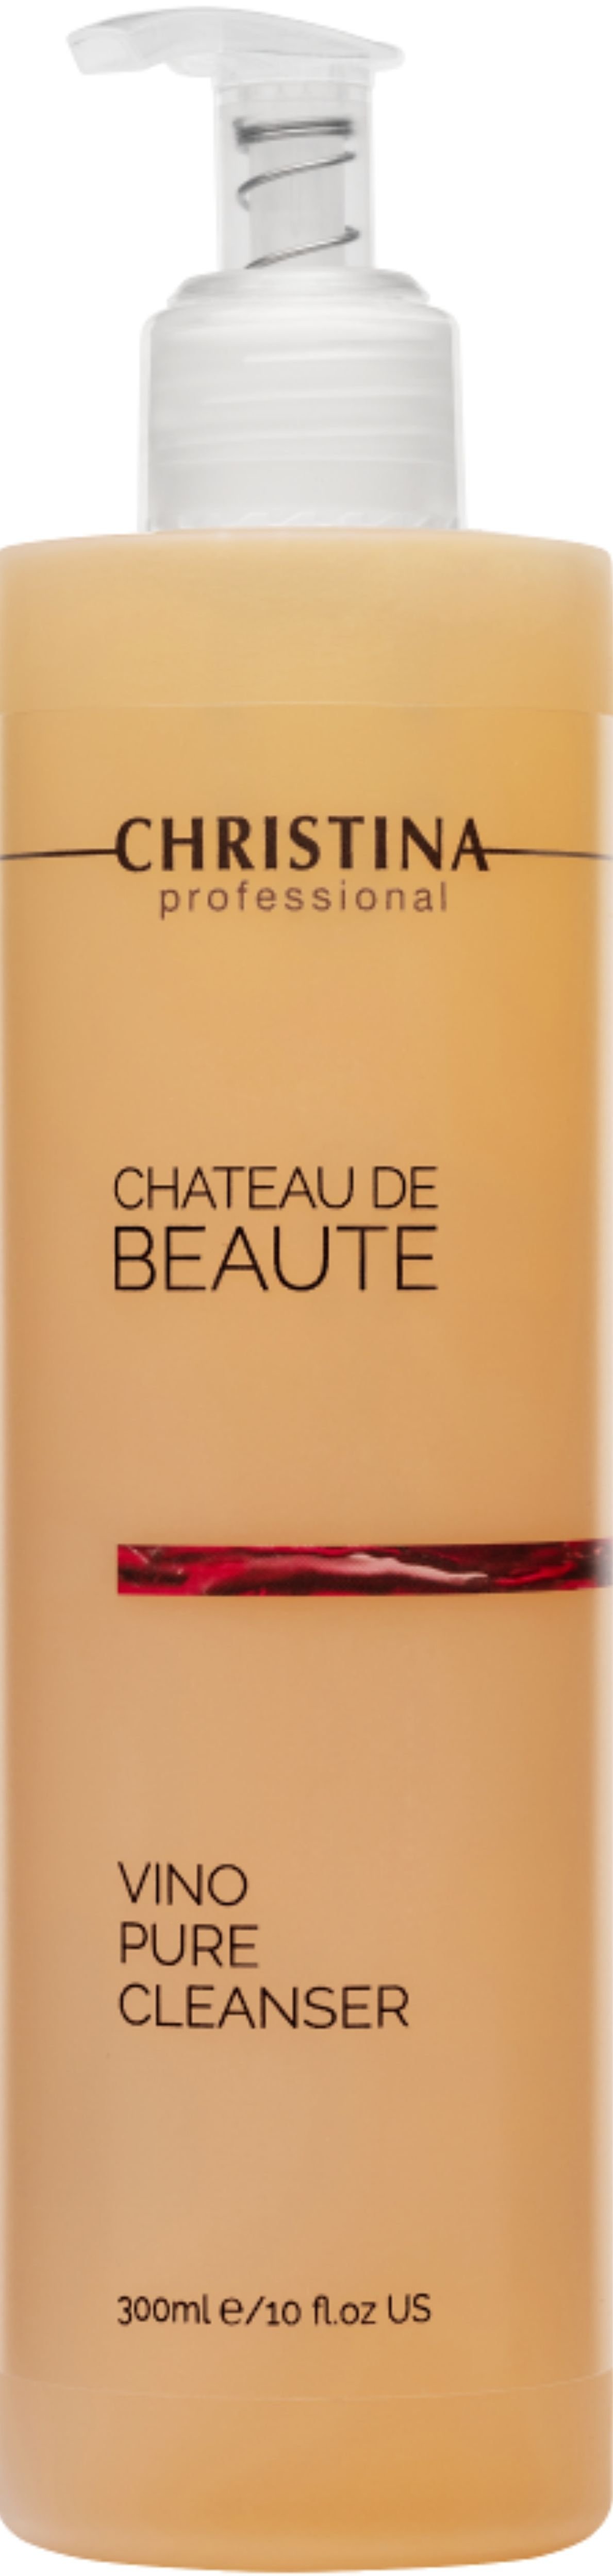 Подарочный набор Christina Chateau De Beaute: Флюид 30 мл + Очищающий гель 300 мл + Маска для мгновенного лифтинга 75 мл + Защитный крем SPF 30 50 мл - фото 3